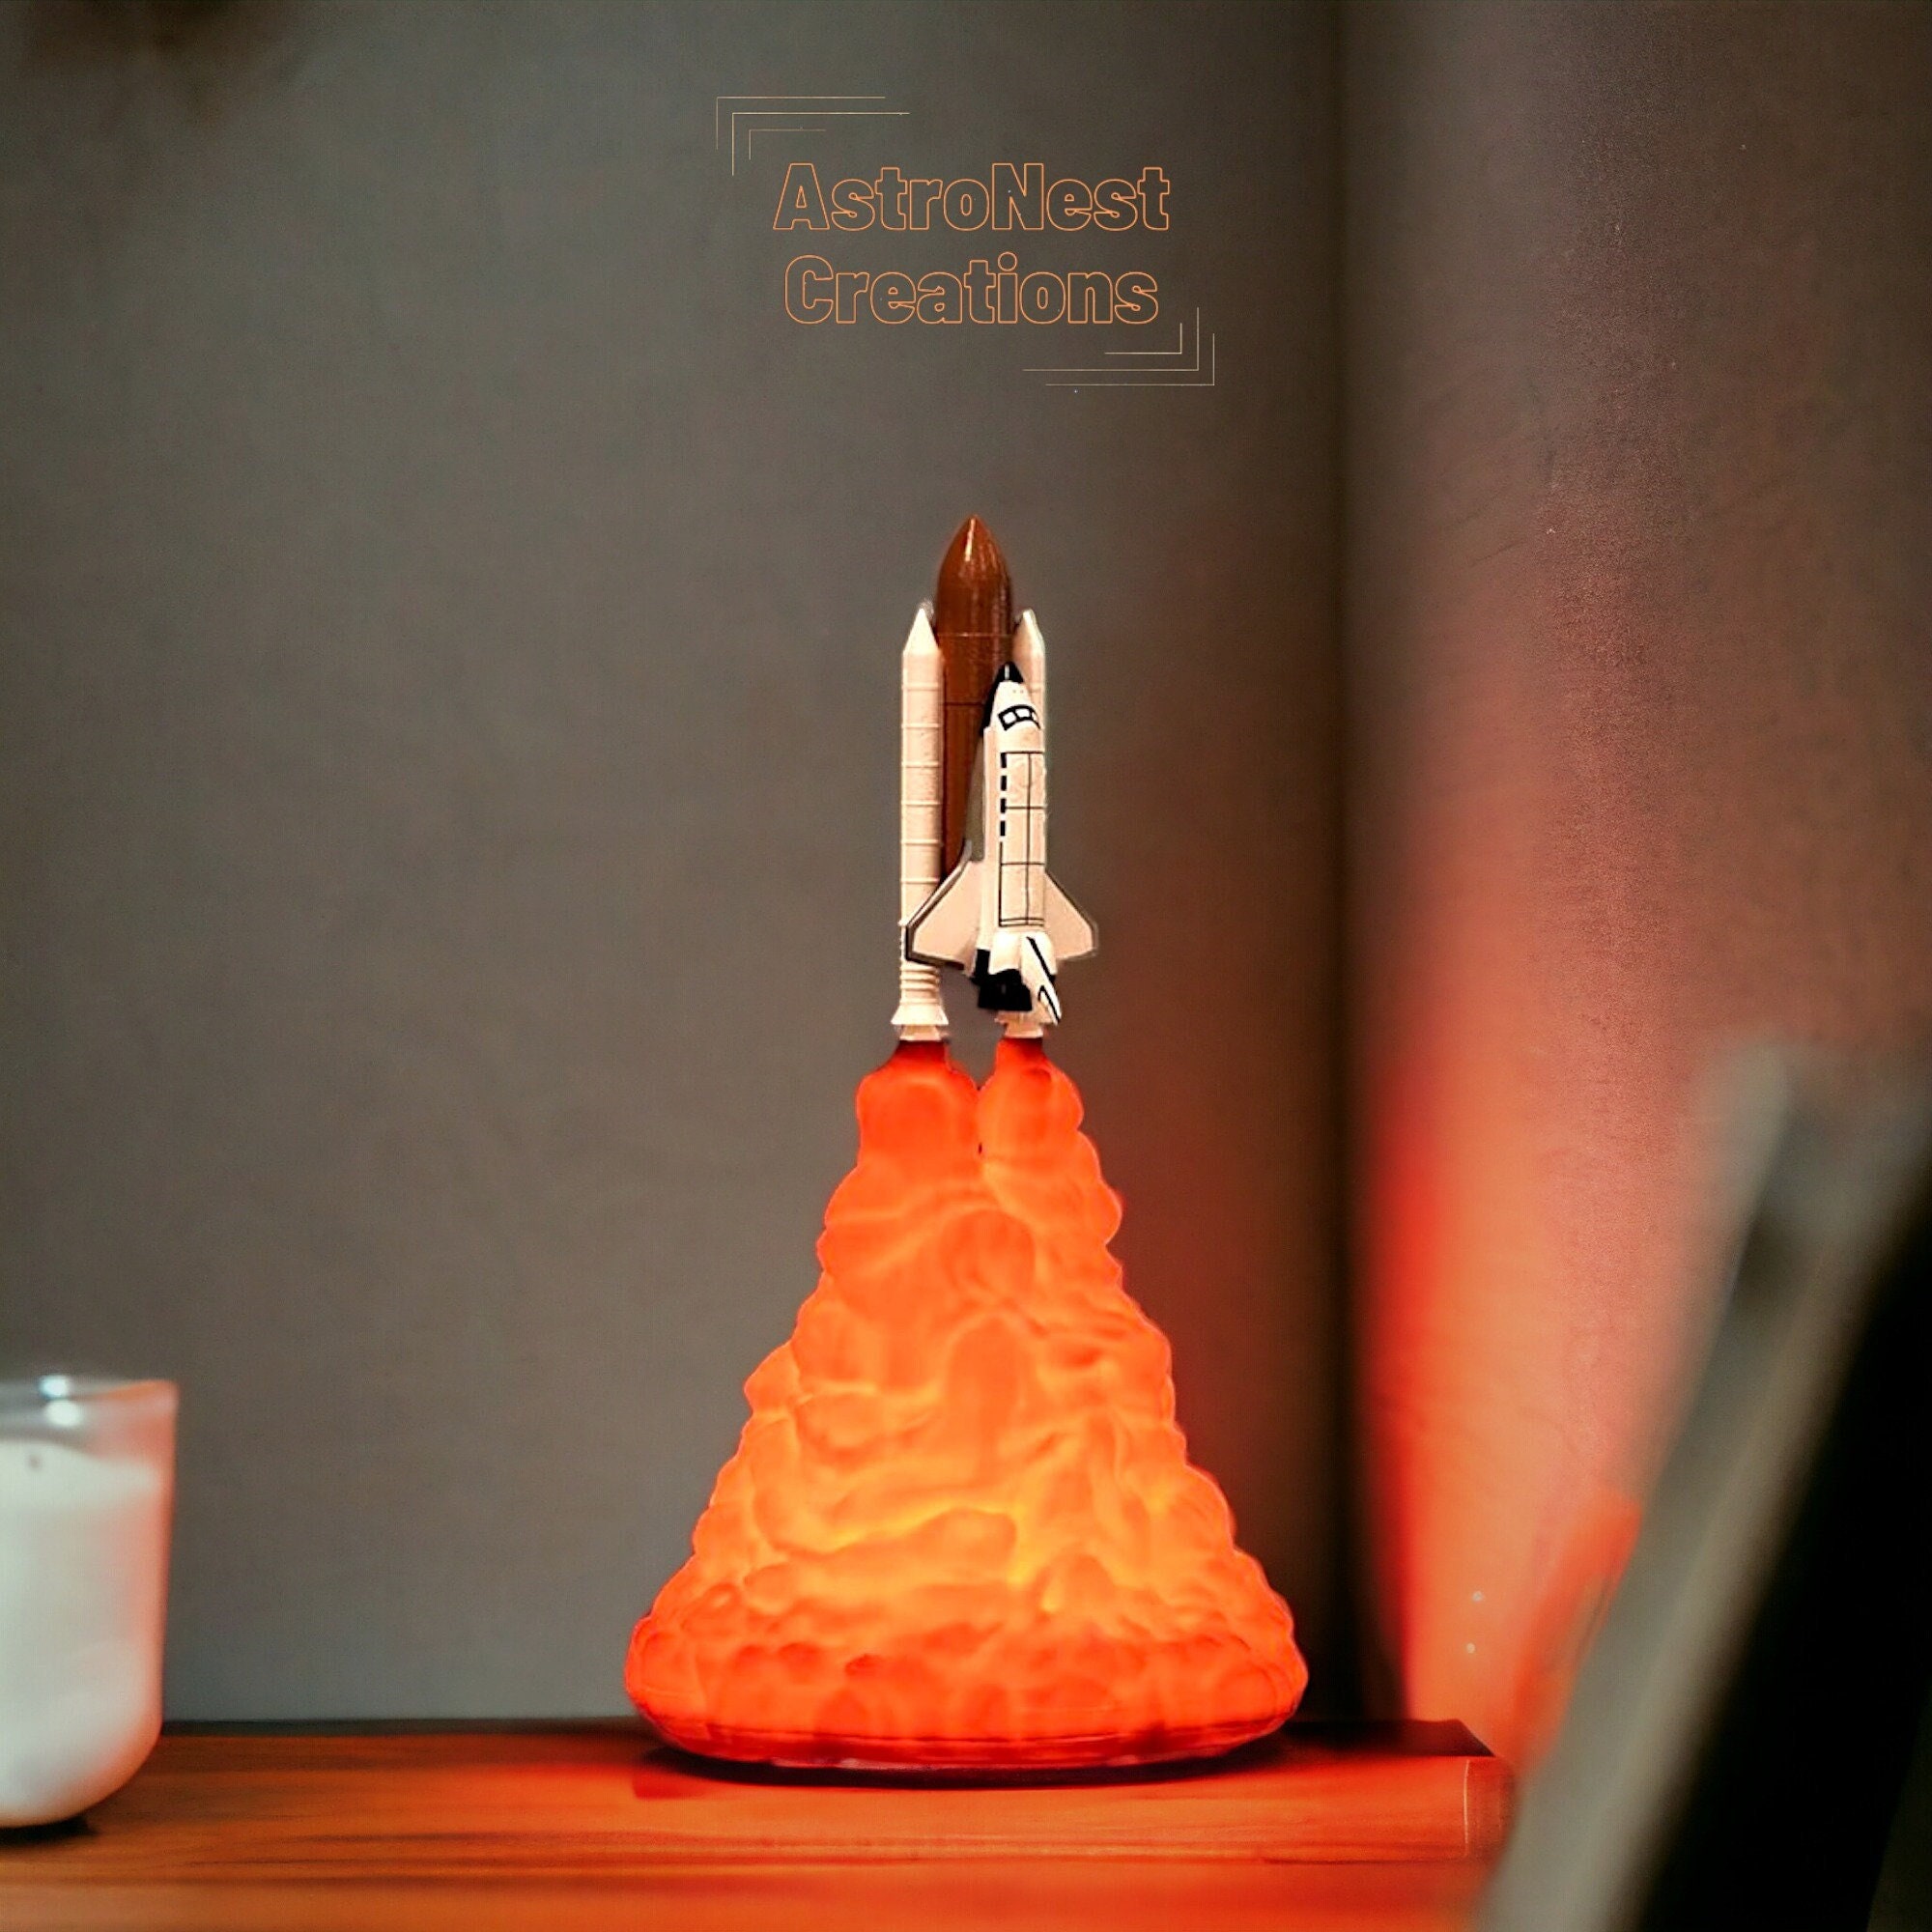 Lampe - Veilleuse Wood Led Space - fusée - voyage dans l'espace - fille -  garçon 